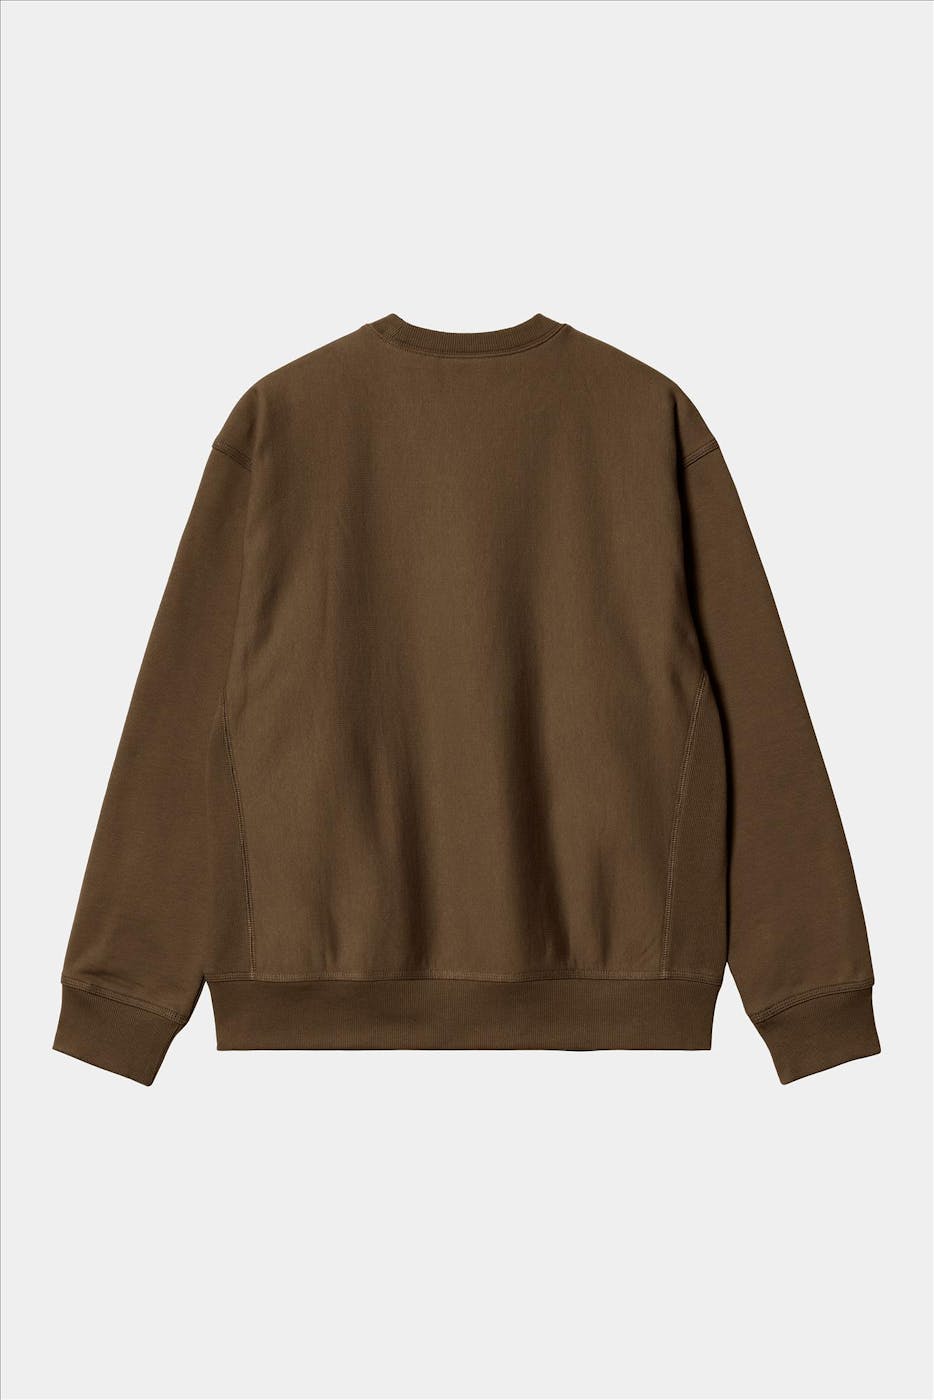 Carhartt WIP - Bruine American Script sweater